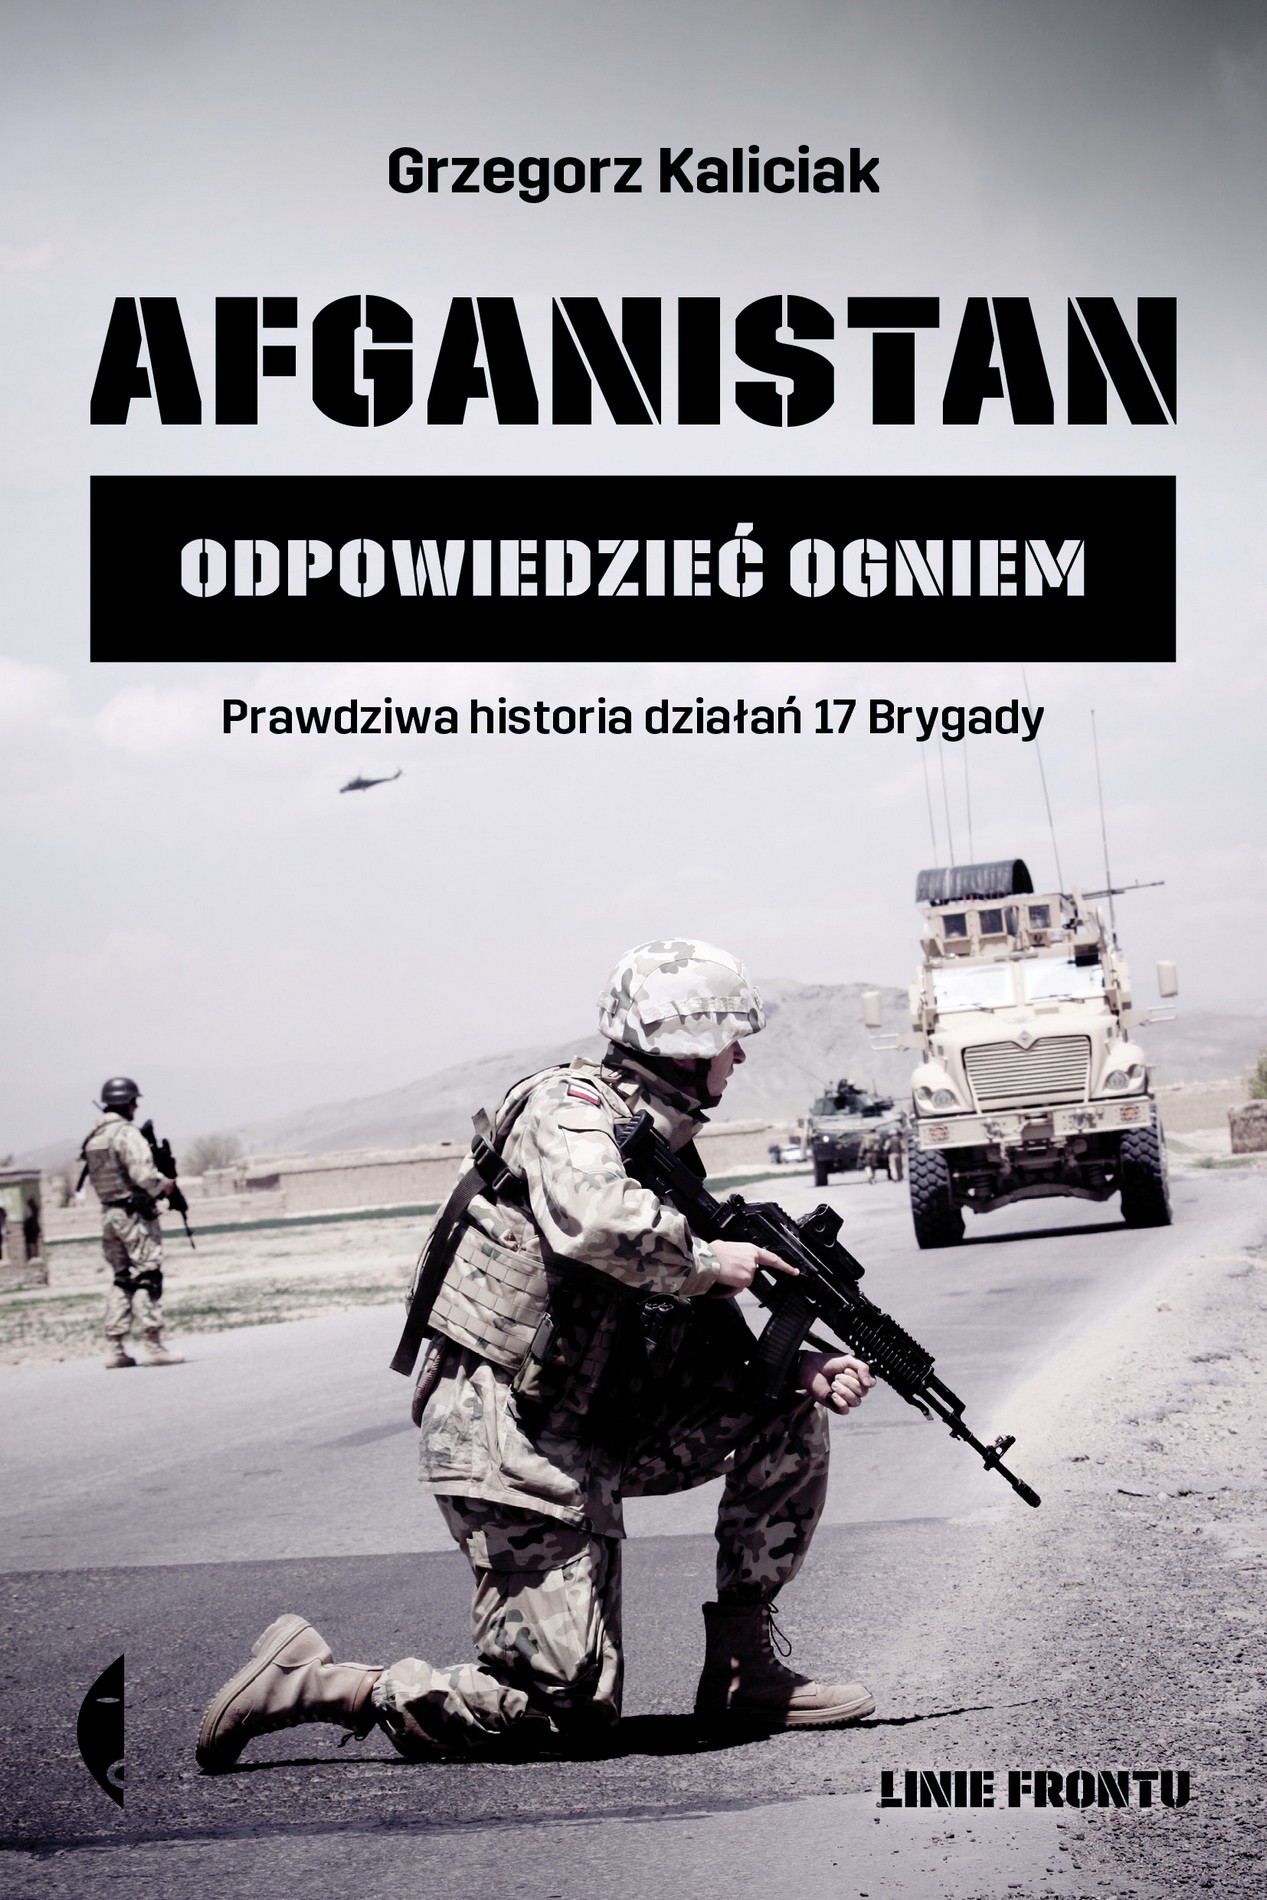 Grzegorz Kaliciak, „Afganistan. Opowiedzieć ogniem” – okładka książki (źródło: materiały prasowe wydawcy)